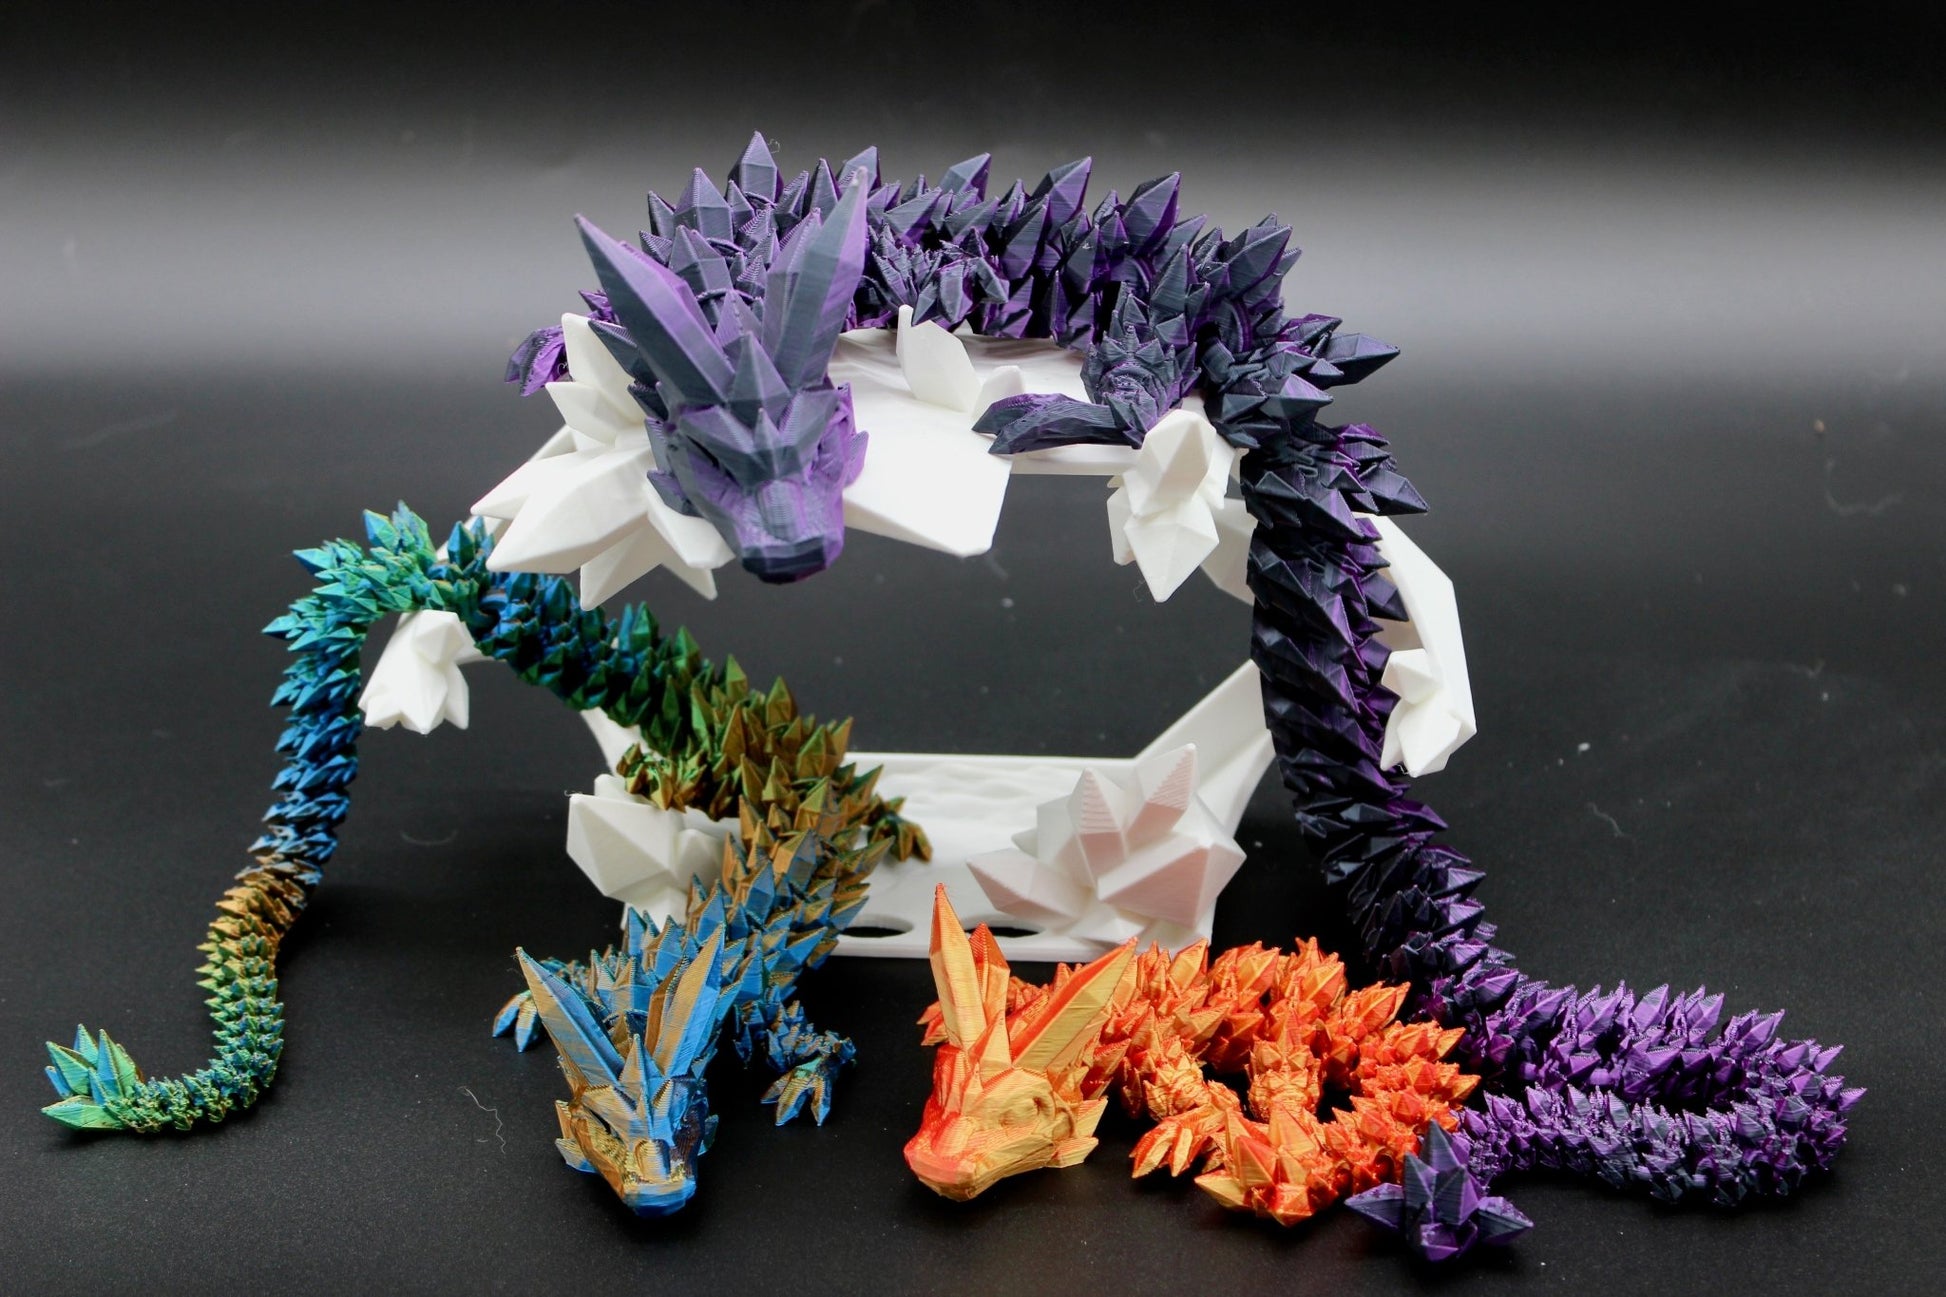 Articulating Dragon Fidget Toy Crystal Dragon Stress Toy Dragon